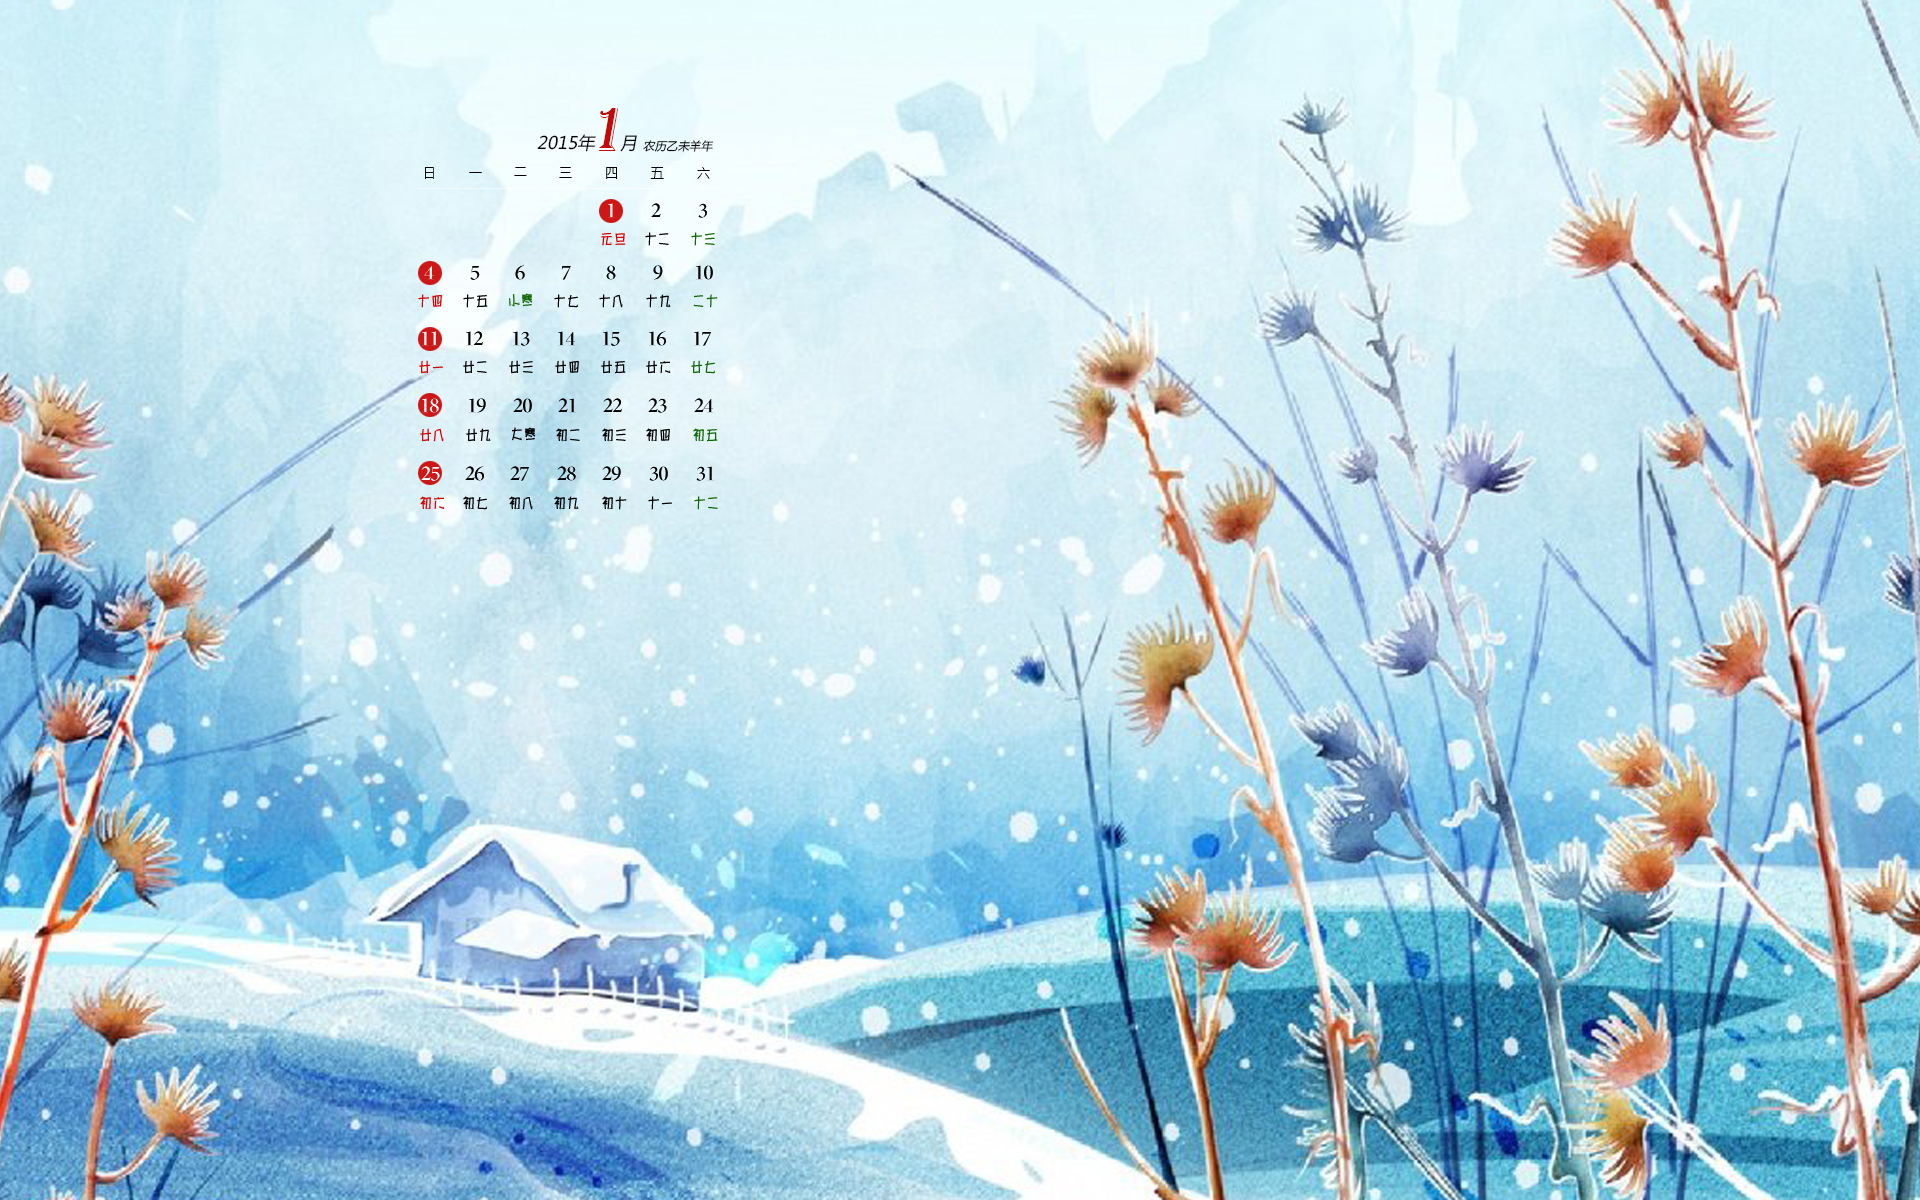 2015年日历全年表 模板E型 免费下载 - 日历精灵